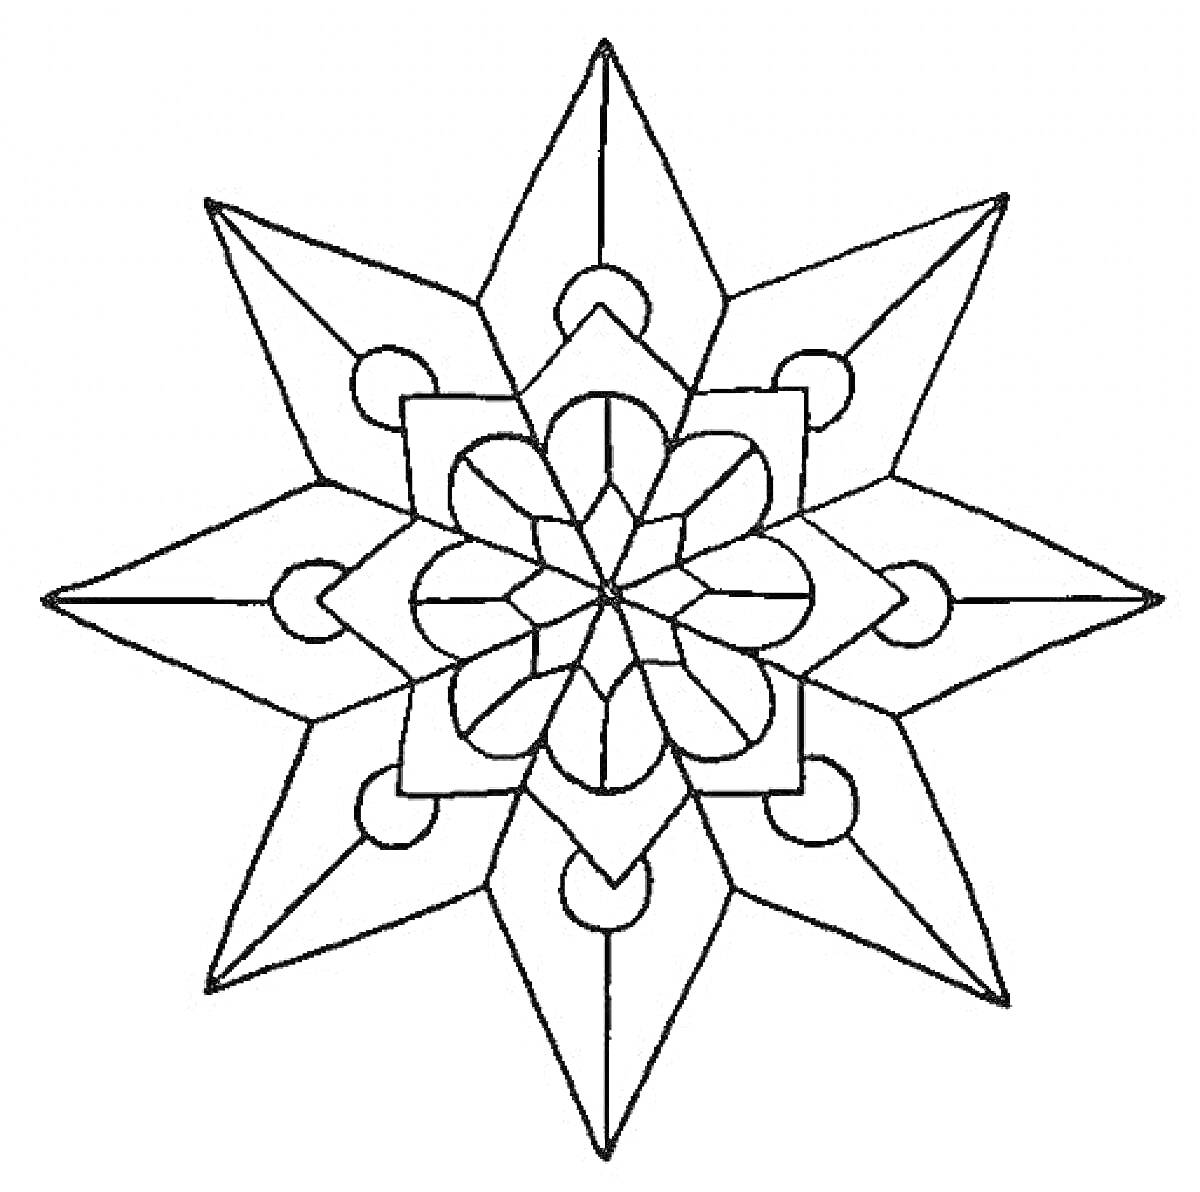 Раскраска Рождественская звезда с узорами и симметричными элементами